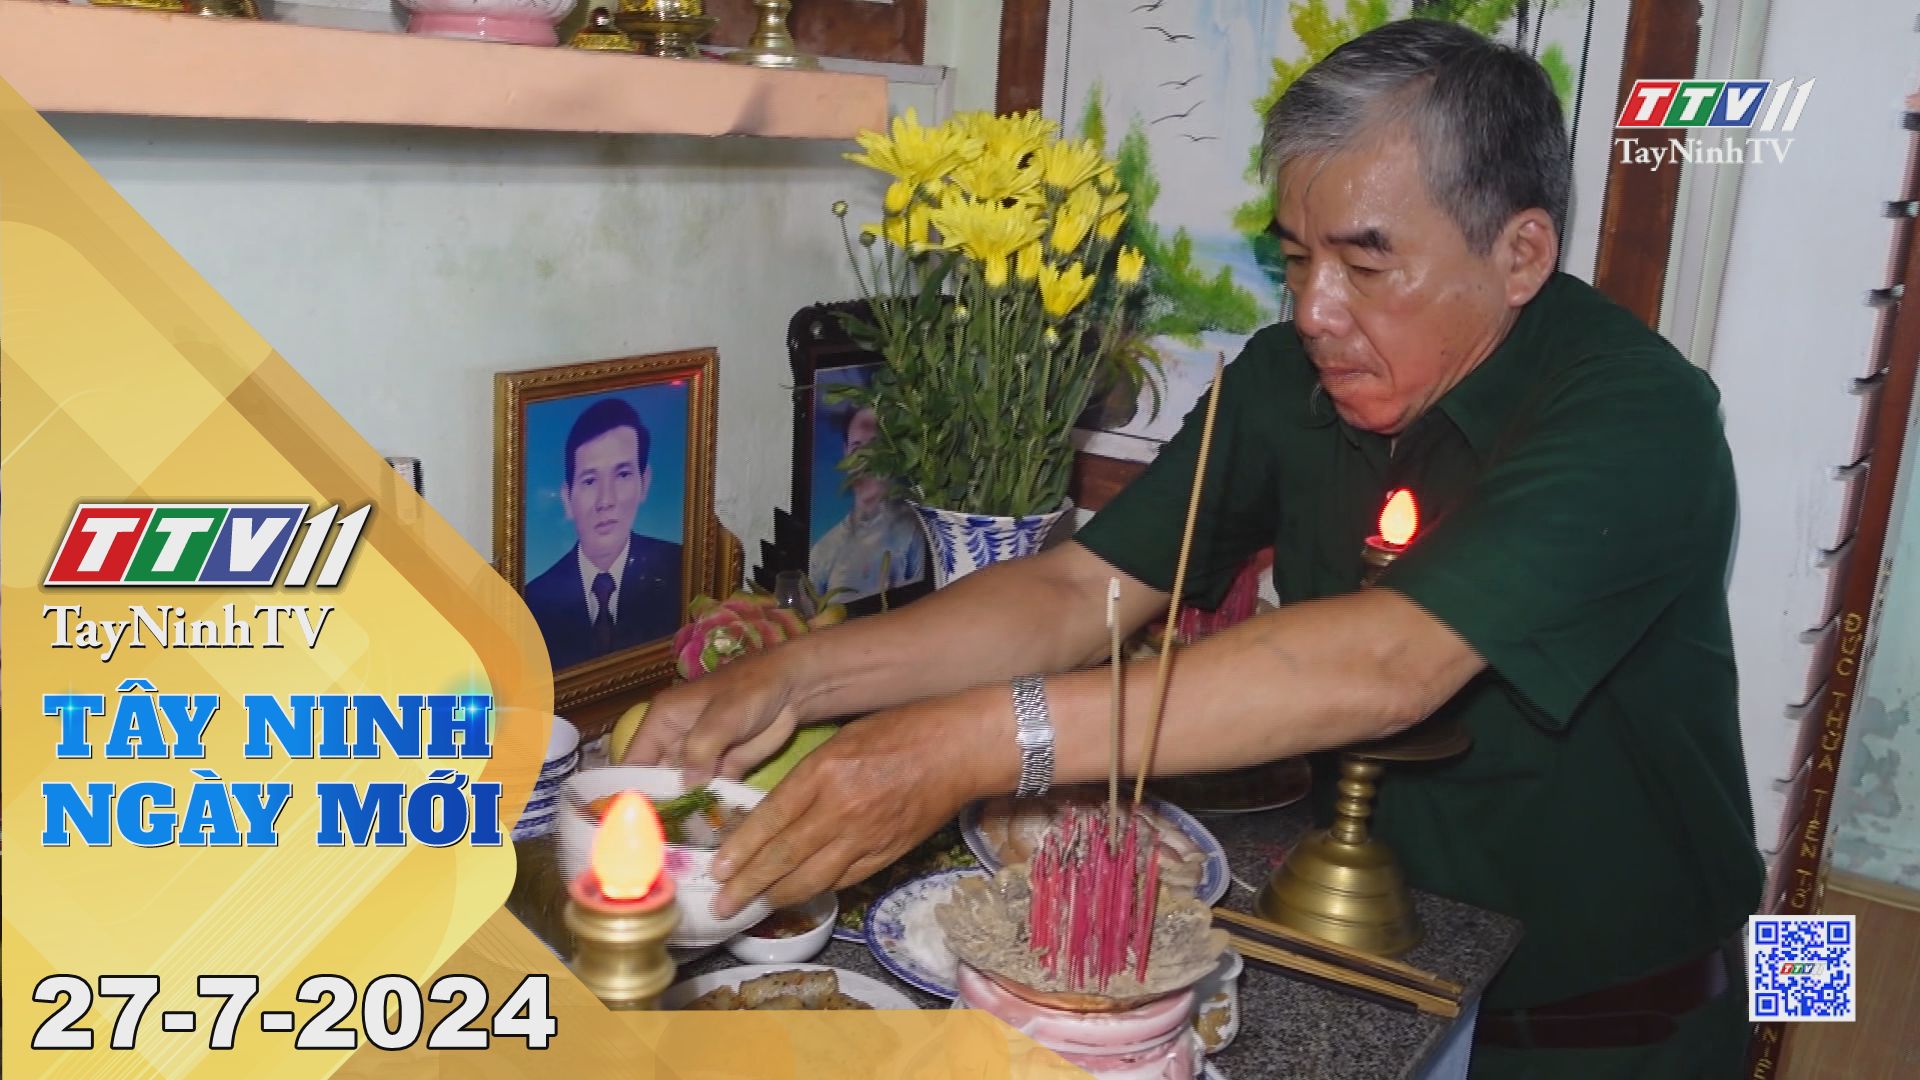 Tây Ninh ngày mới 27-7-2024 | Tin tức hôm nay | TayNinhTV